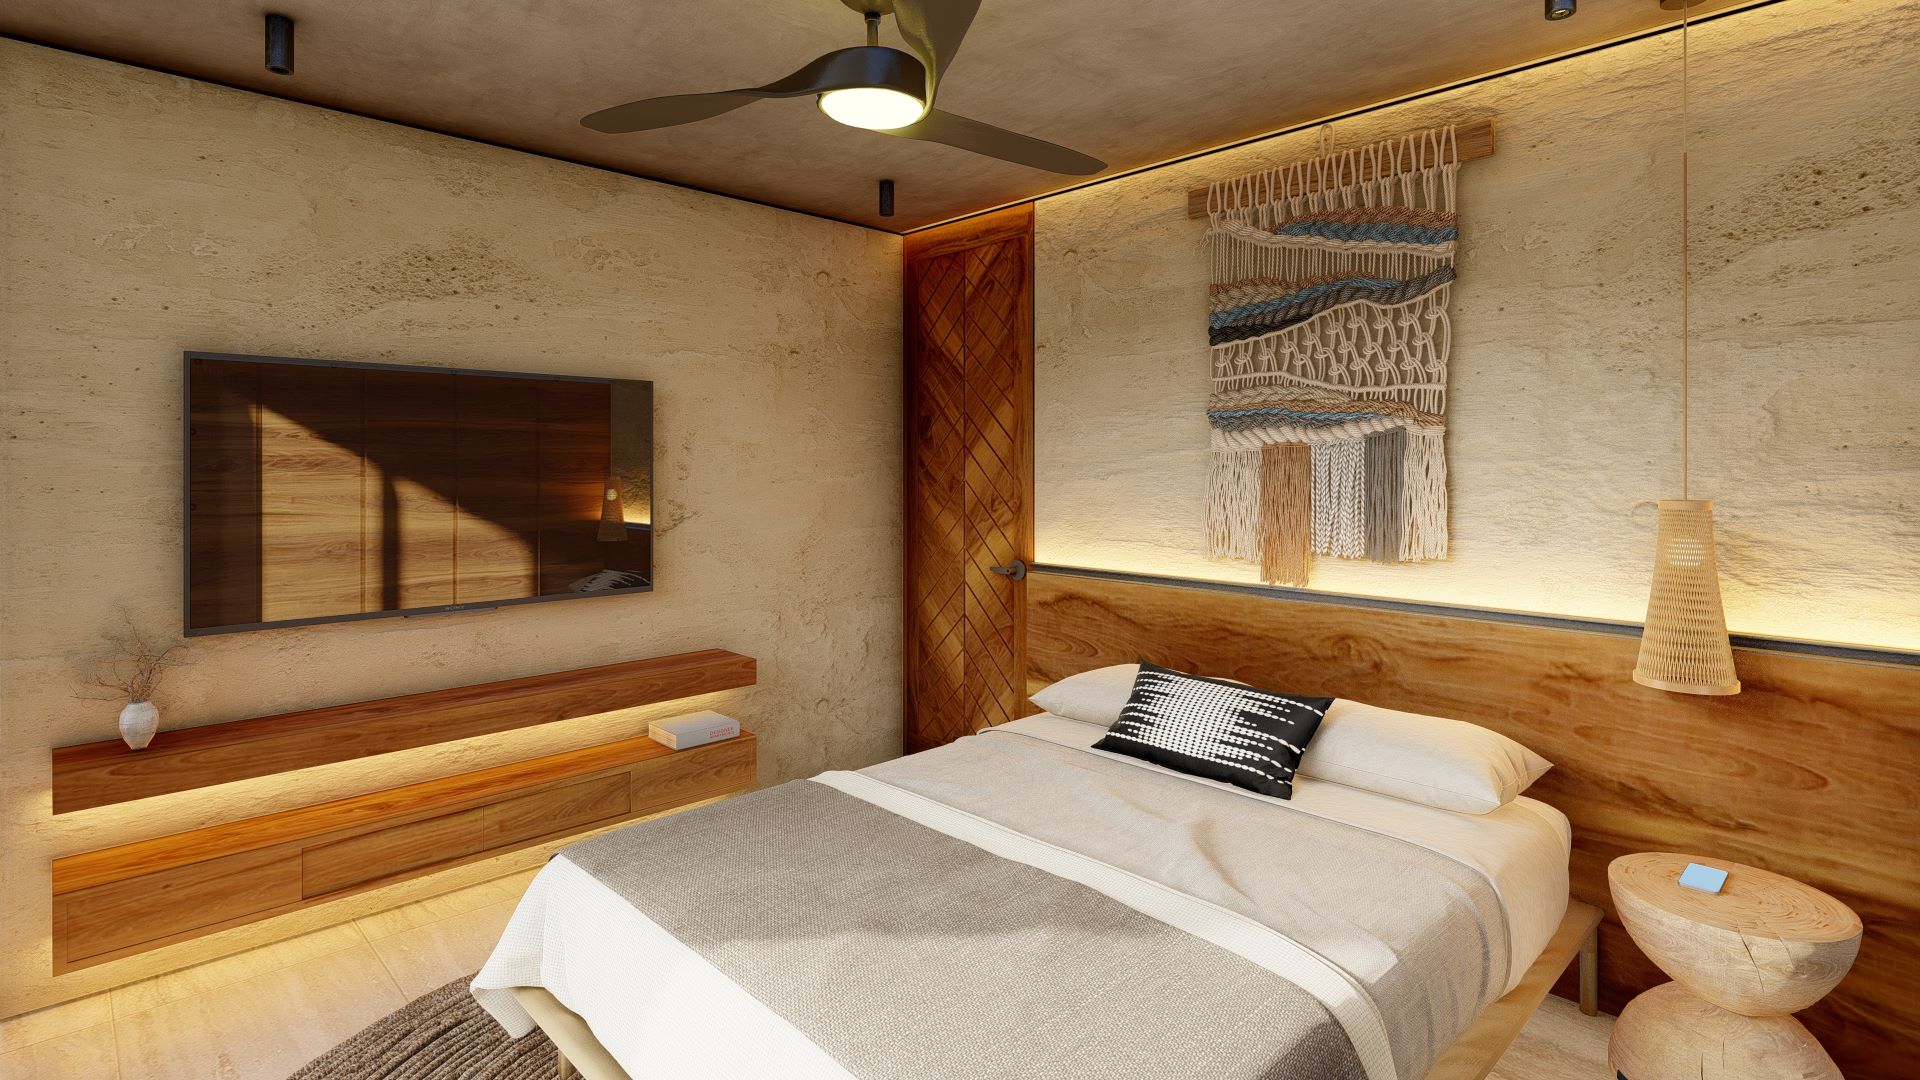 luxury condos for sale in playa del carmen bedroom decor